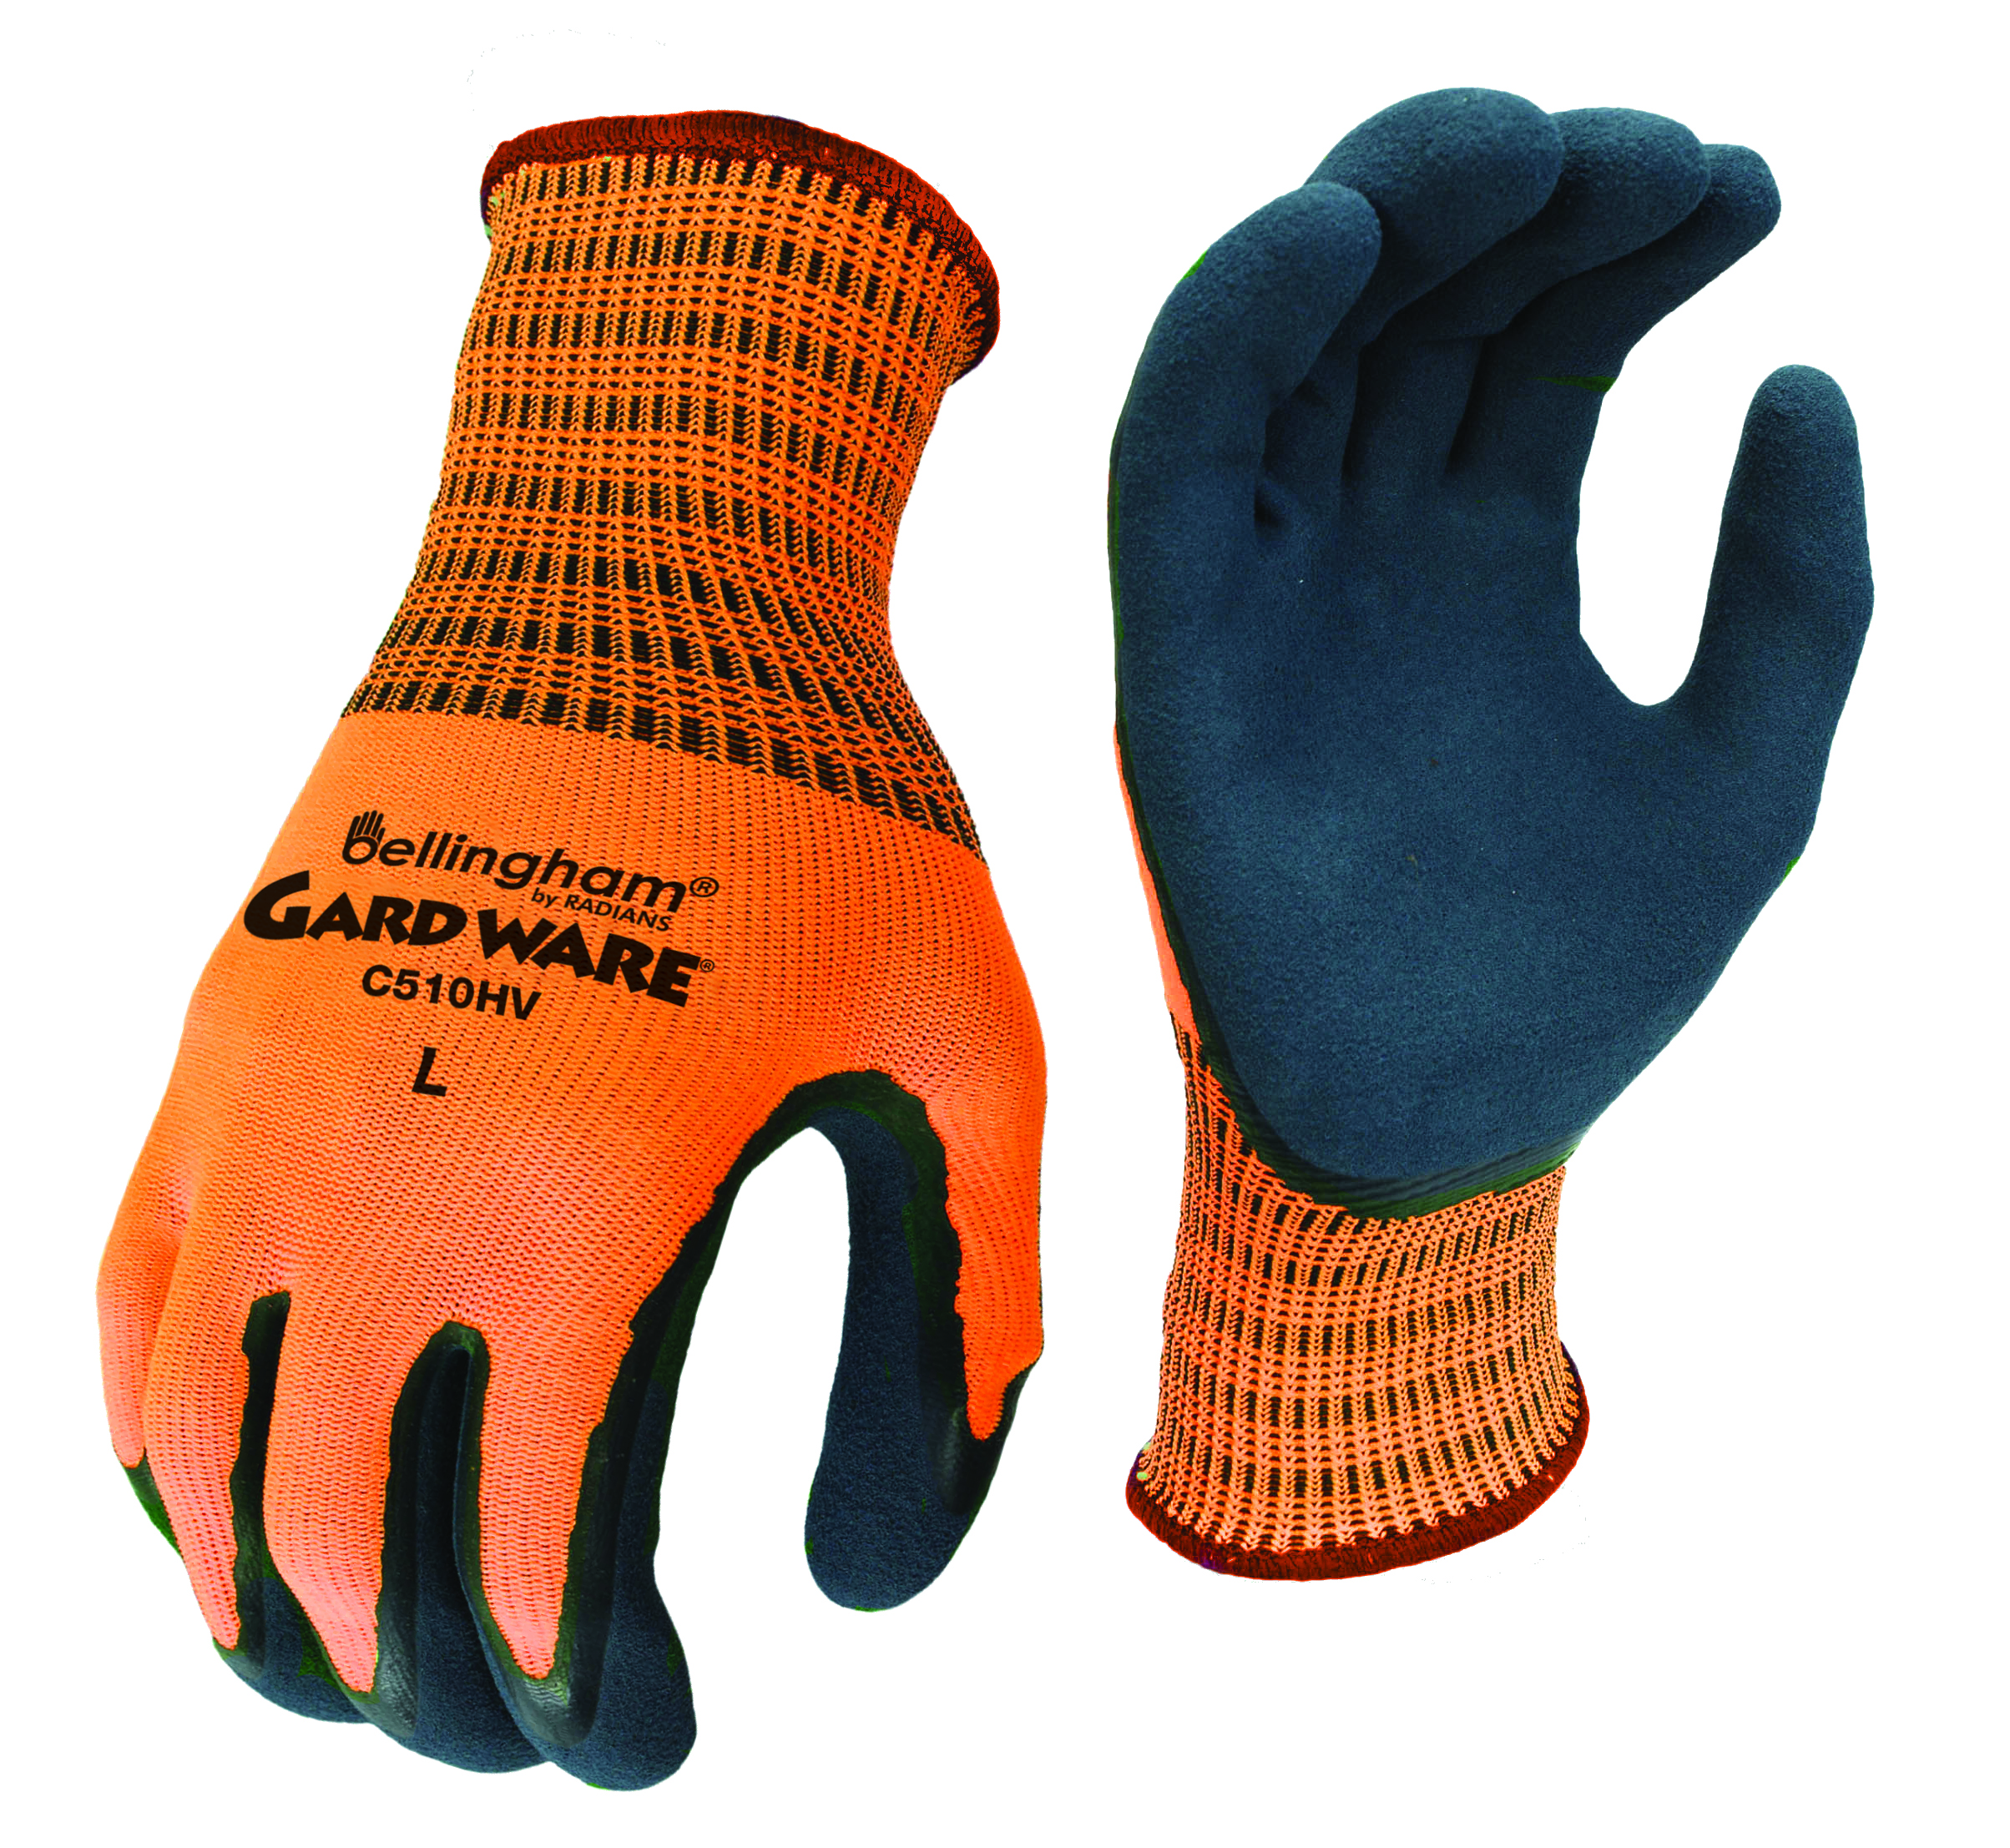 Bellingham C510HV  Gard Ware Hi-Vis Glove